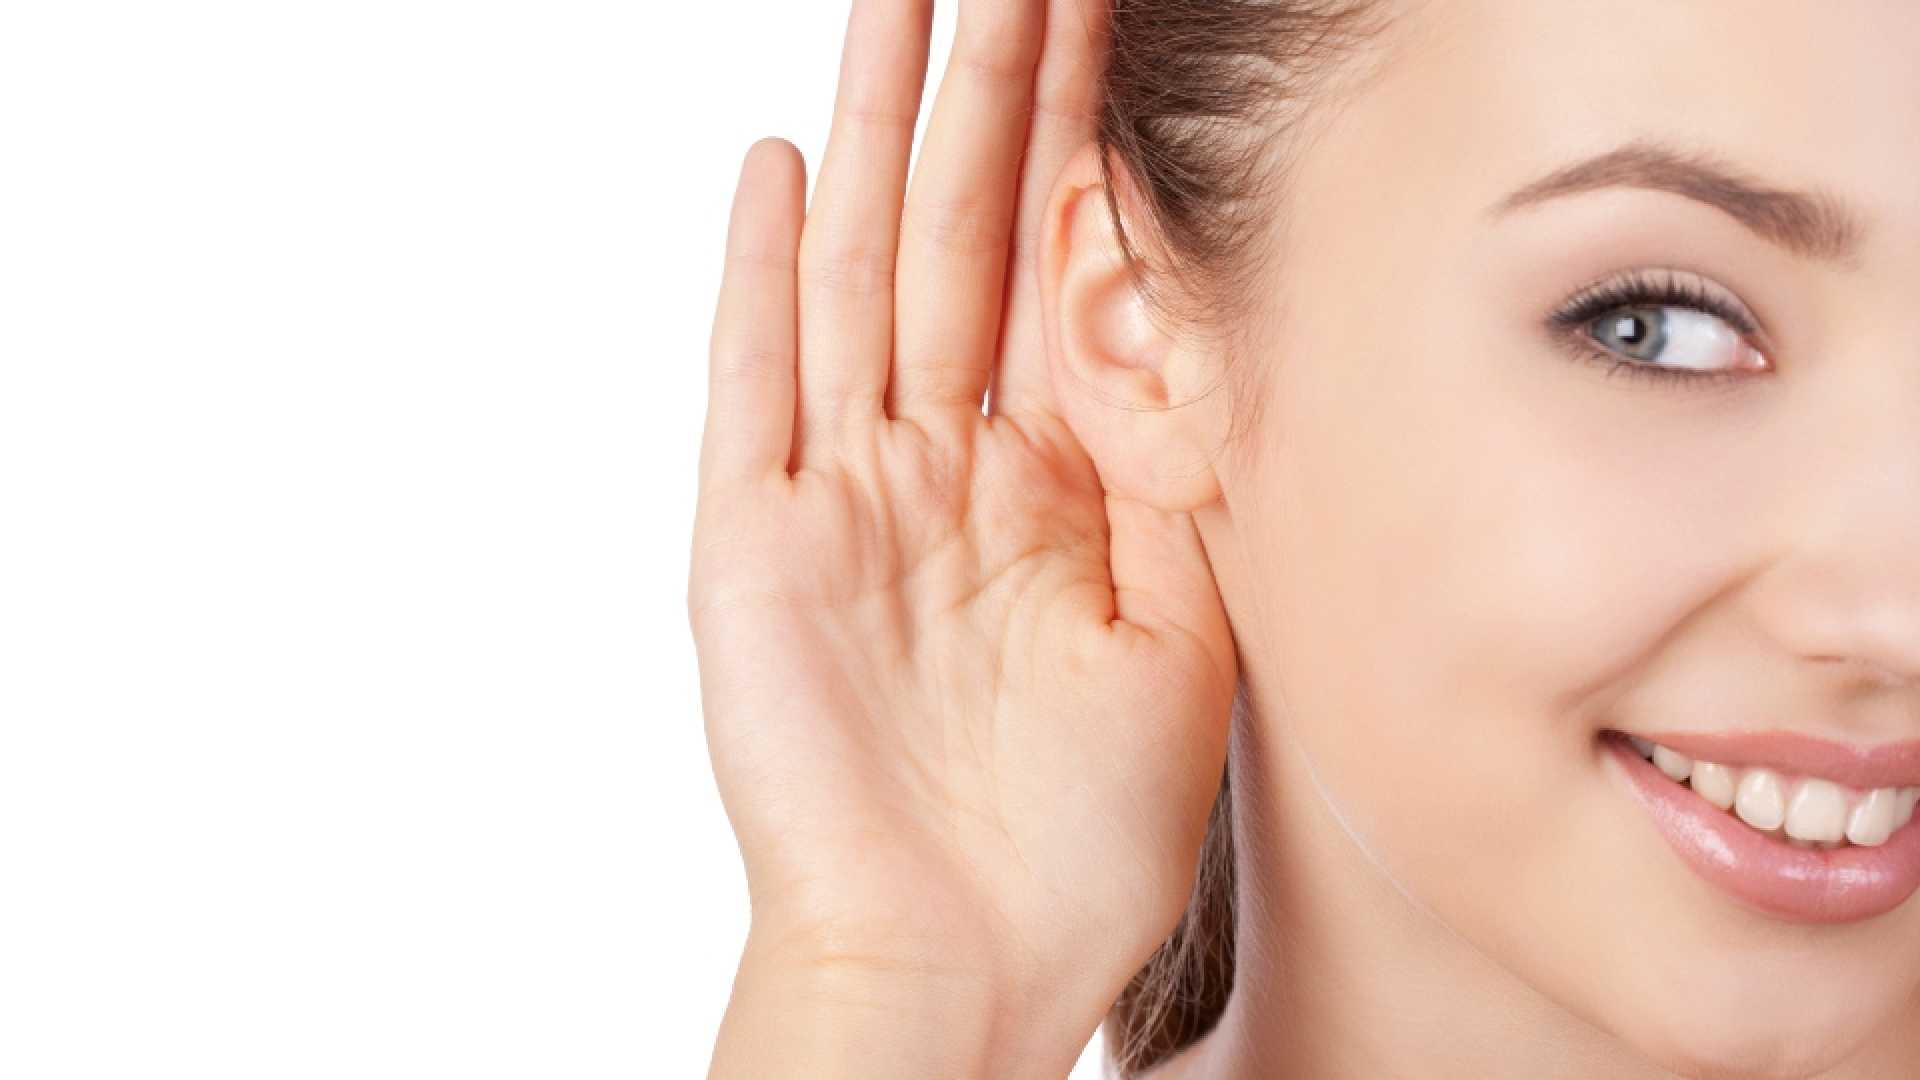 Когда вы в последний раз проверяли слух?